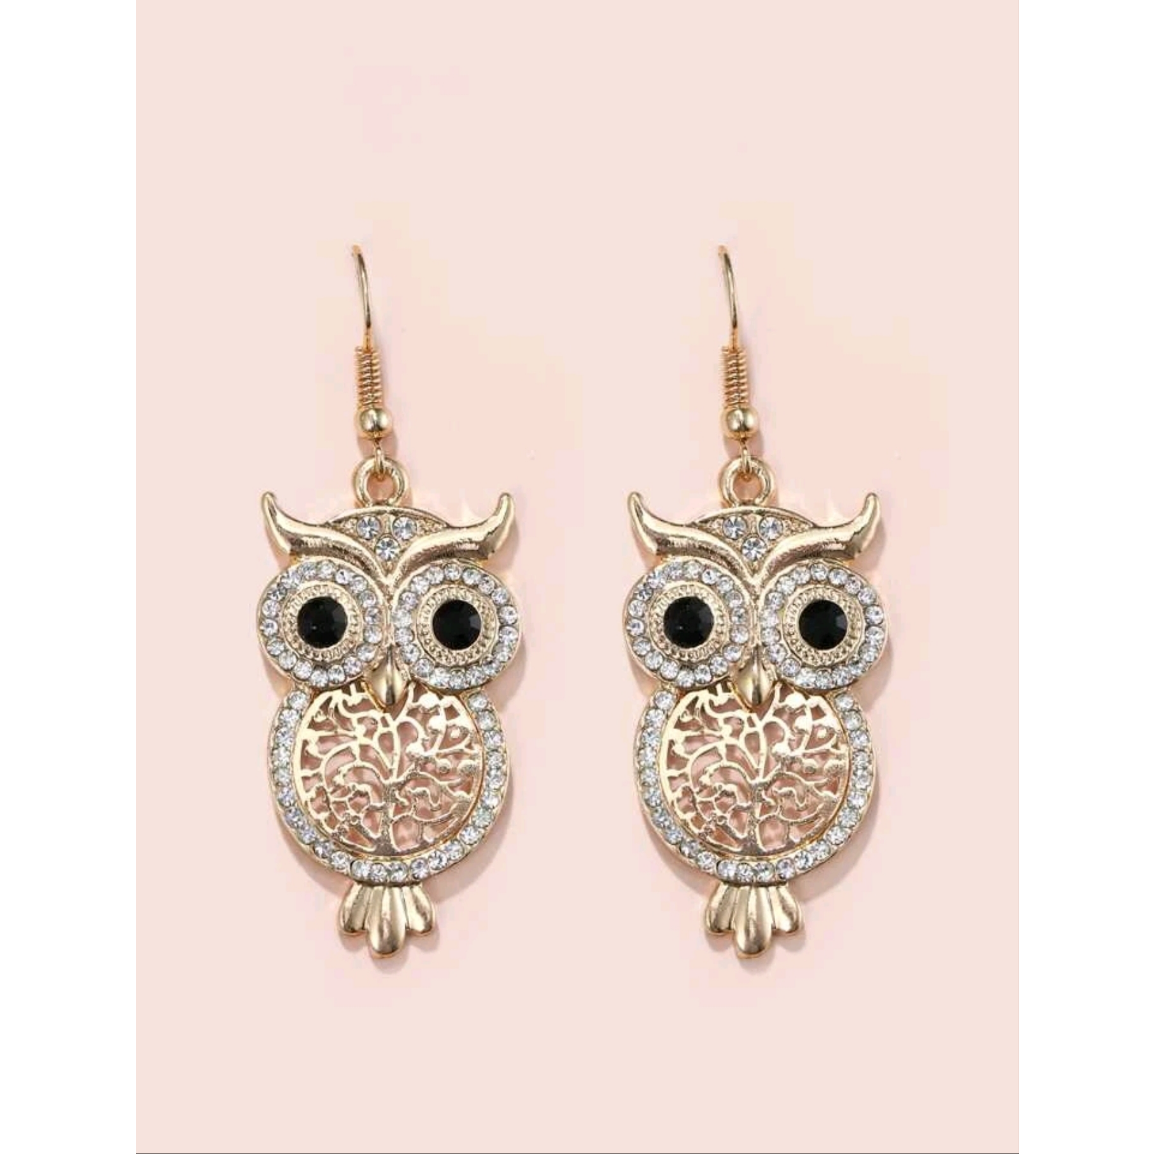 Wisdom owl earrings